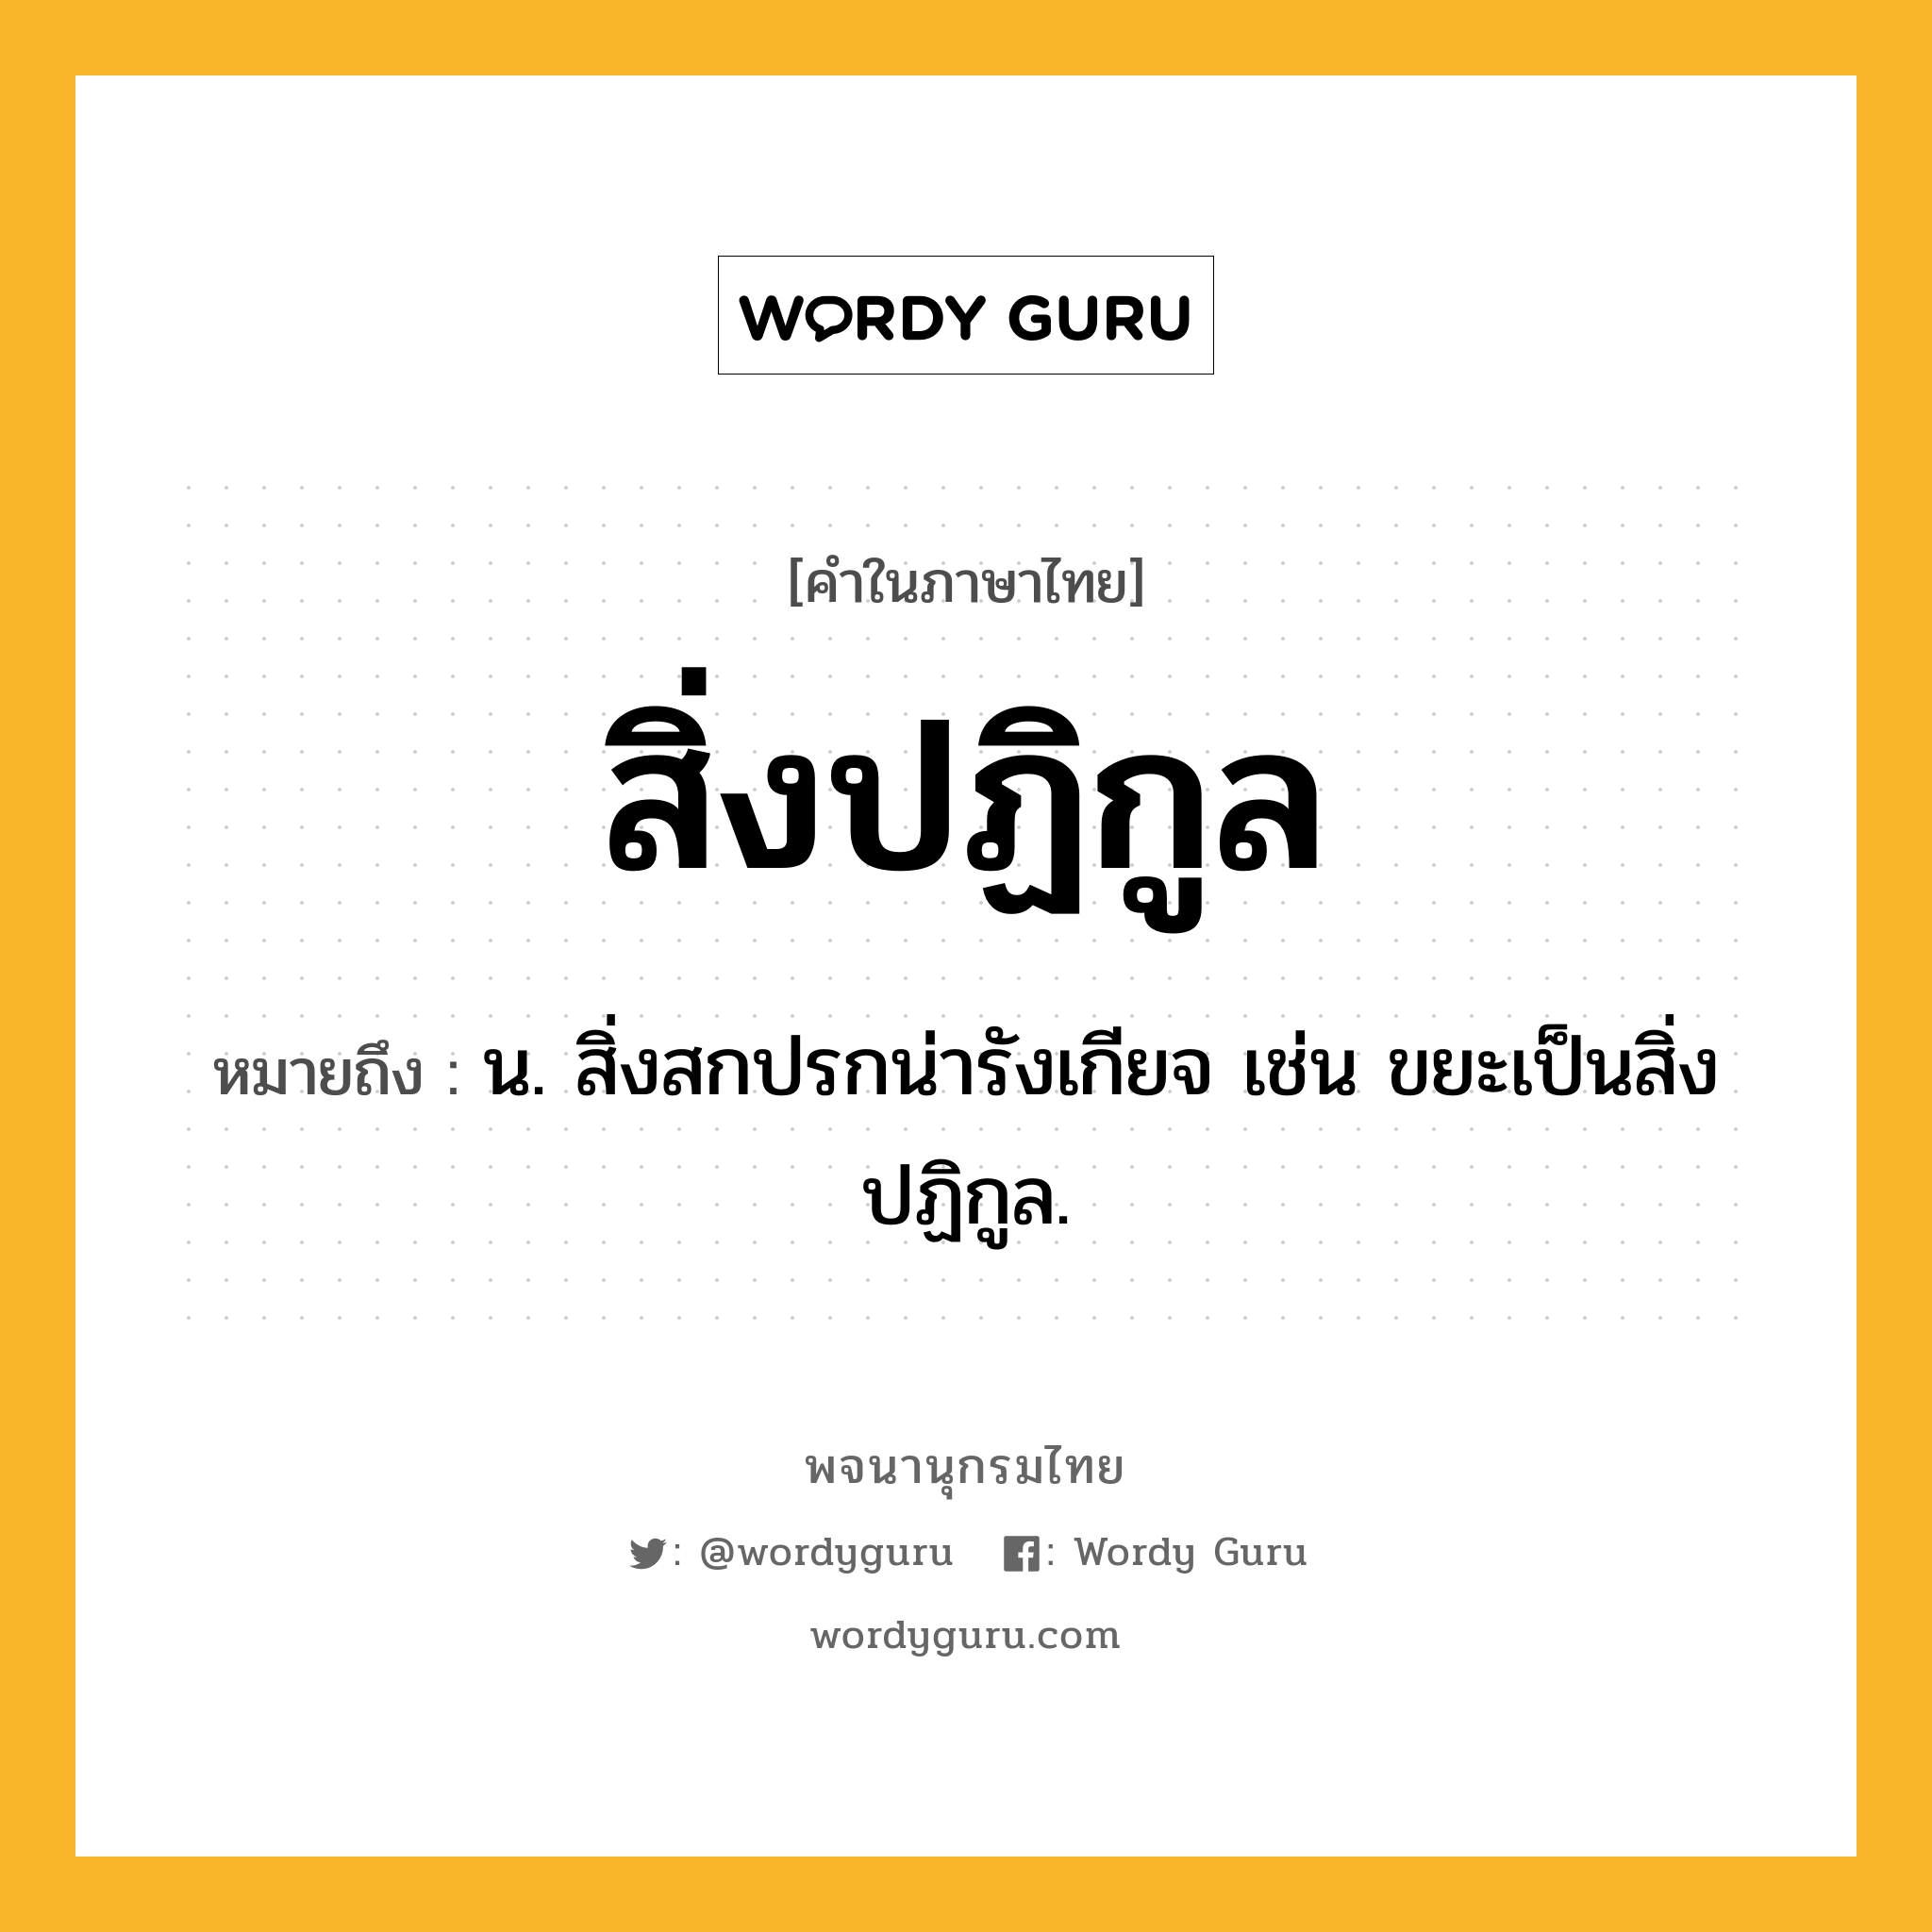 สิ่งปฏิกูล ความหมาย หมายถึงอะไร?, คำในภาษาไทย สิ่งปฏิกูล หมายถึง น. สิ่งสกปรกน่ารังเกียจ เช่น ขยะเป็นสิ่งปฏิกูล.